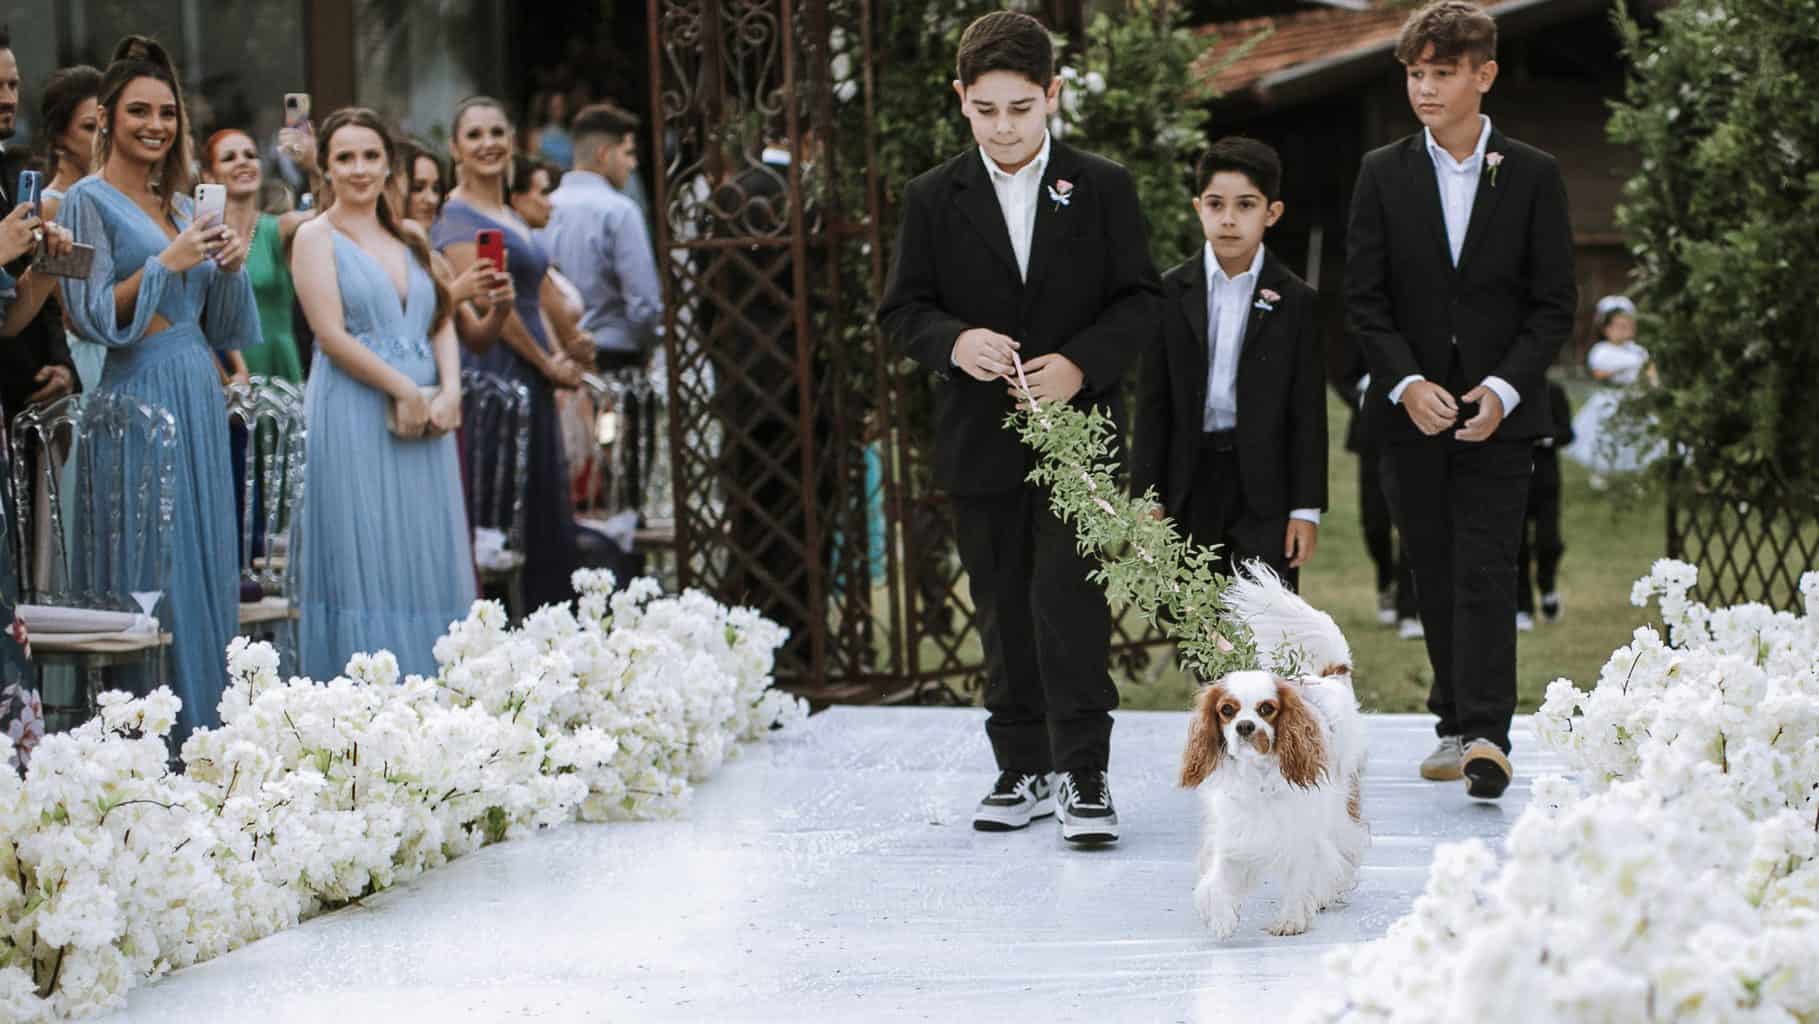 cerimonia-de-casamento-Isadora-e-Lucas-Estaleiro-Guest-House-The-Alms-Brand-Fotografia-0759-scaled